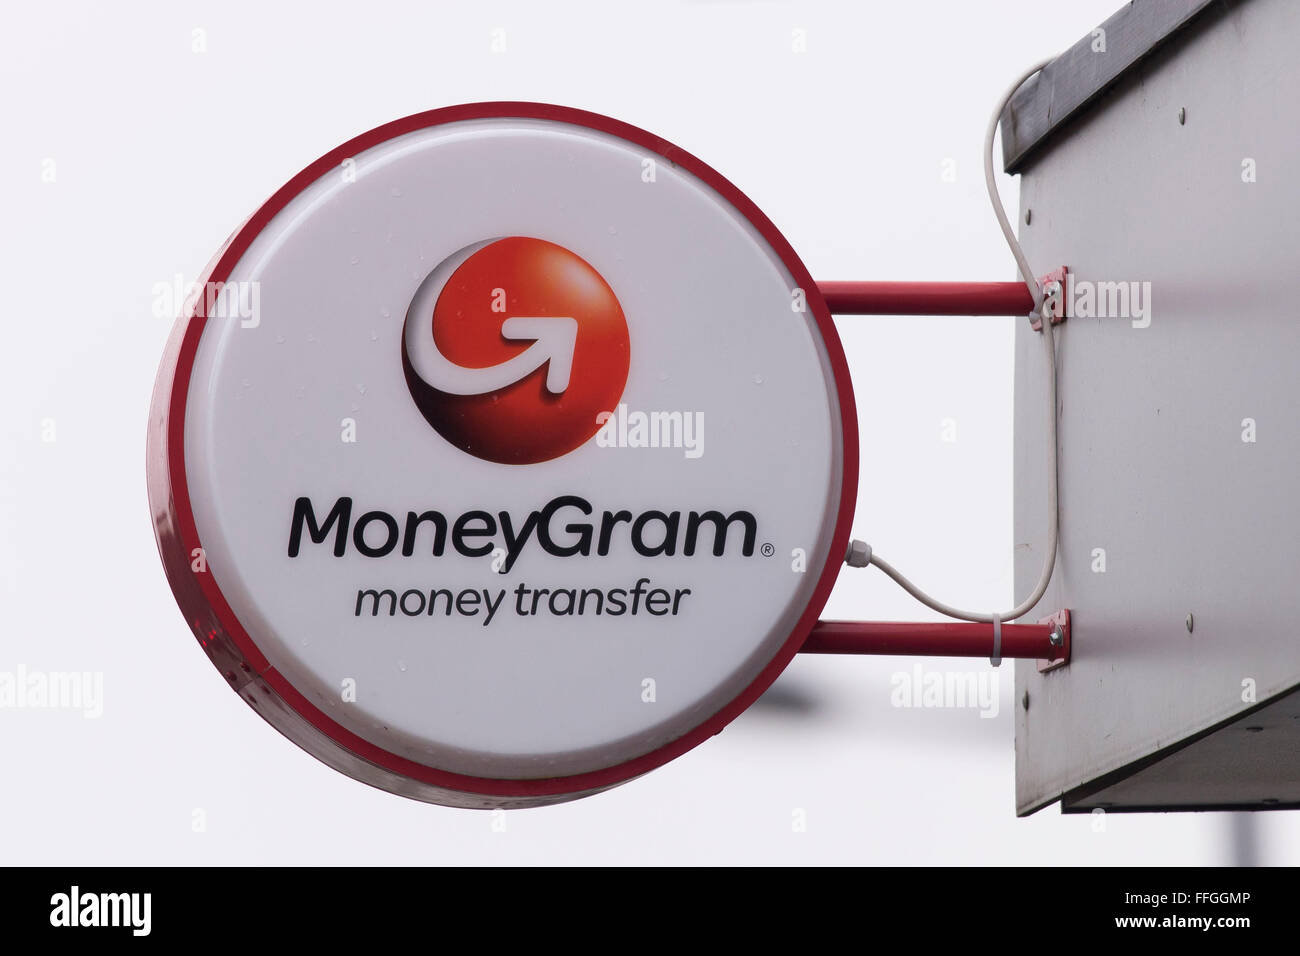 Moneygram money transfer sign logo brand. Stock Photo